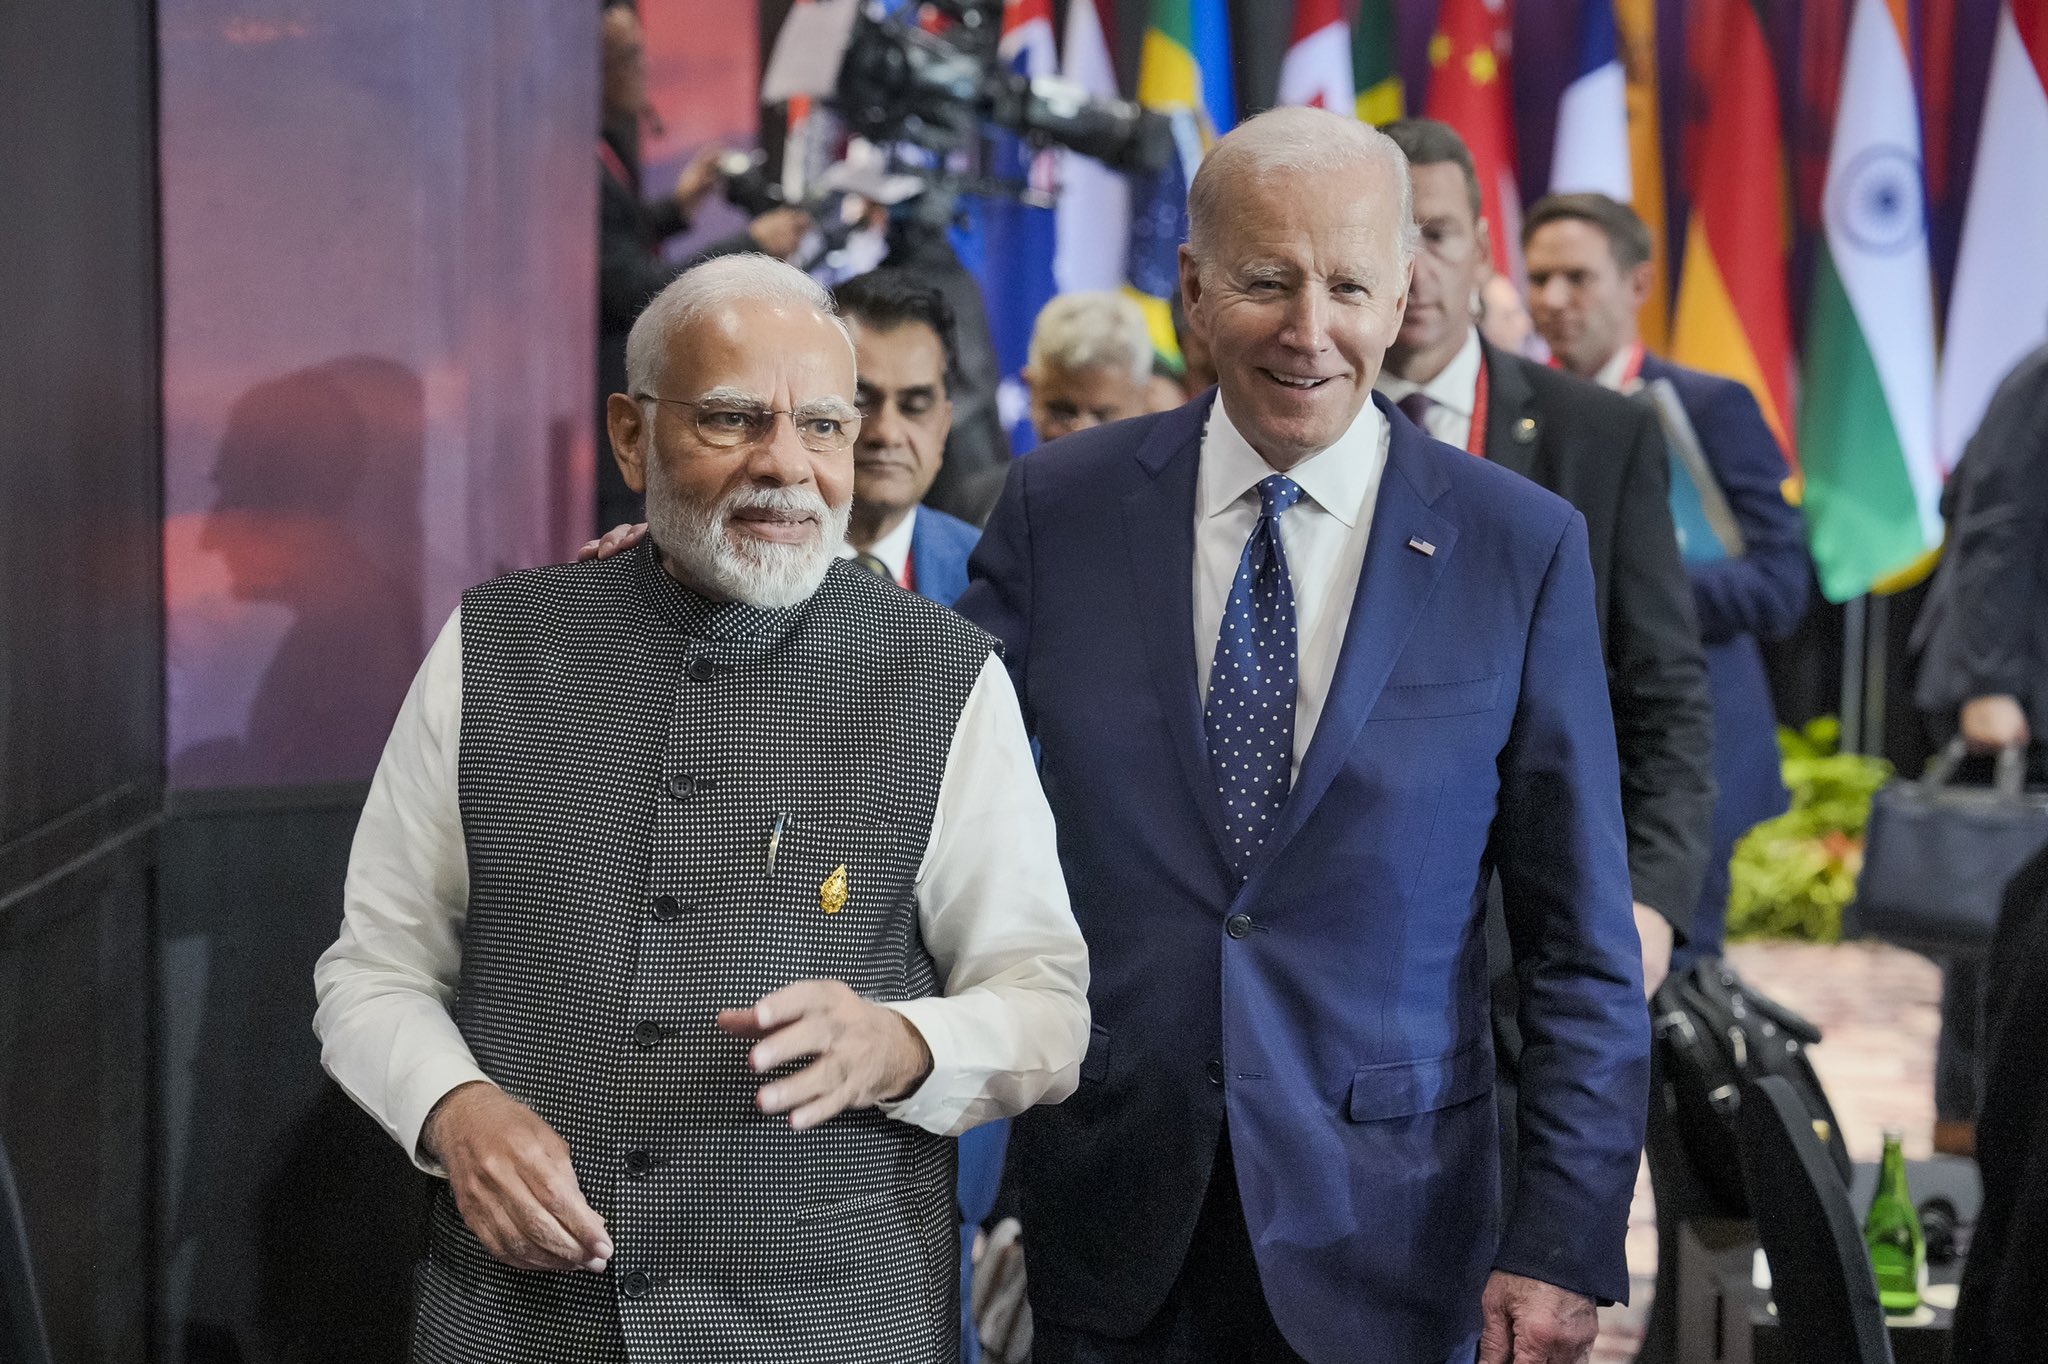 G-20 : बाइडन बोले, 'दोस्त' पीएम मोदी का साथ देने को बेताब अमरीका, भारत ने सभाली जी-20 की कमान